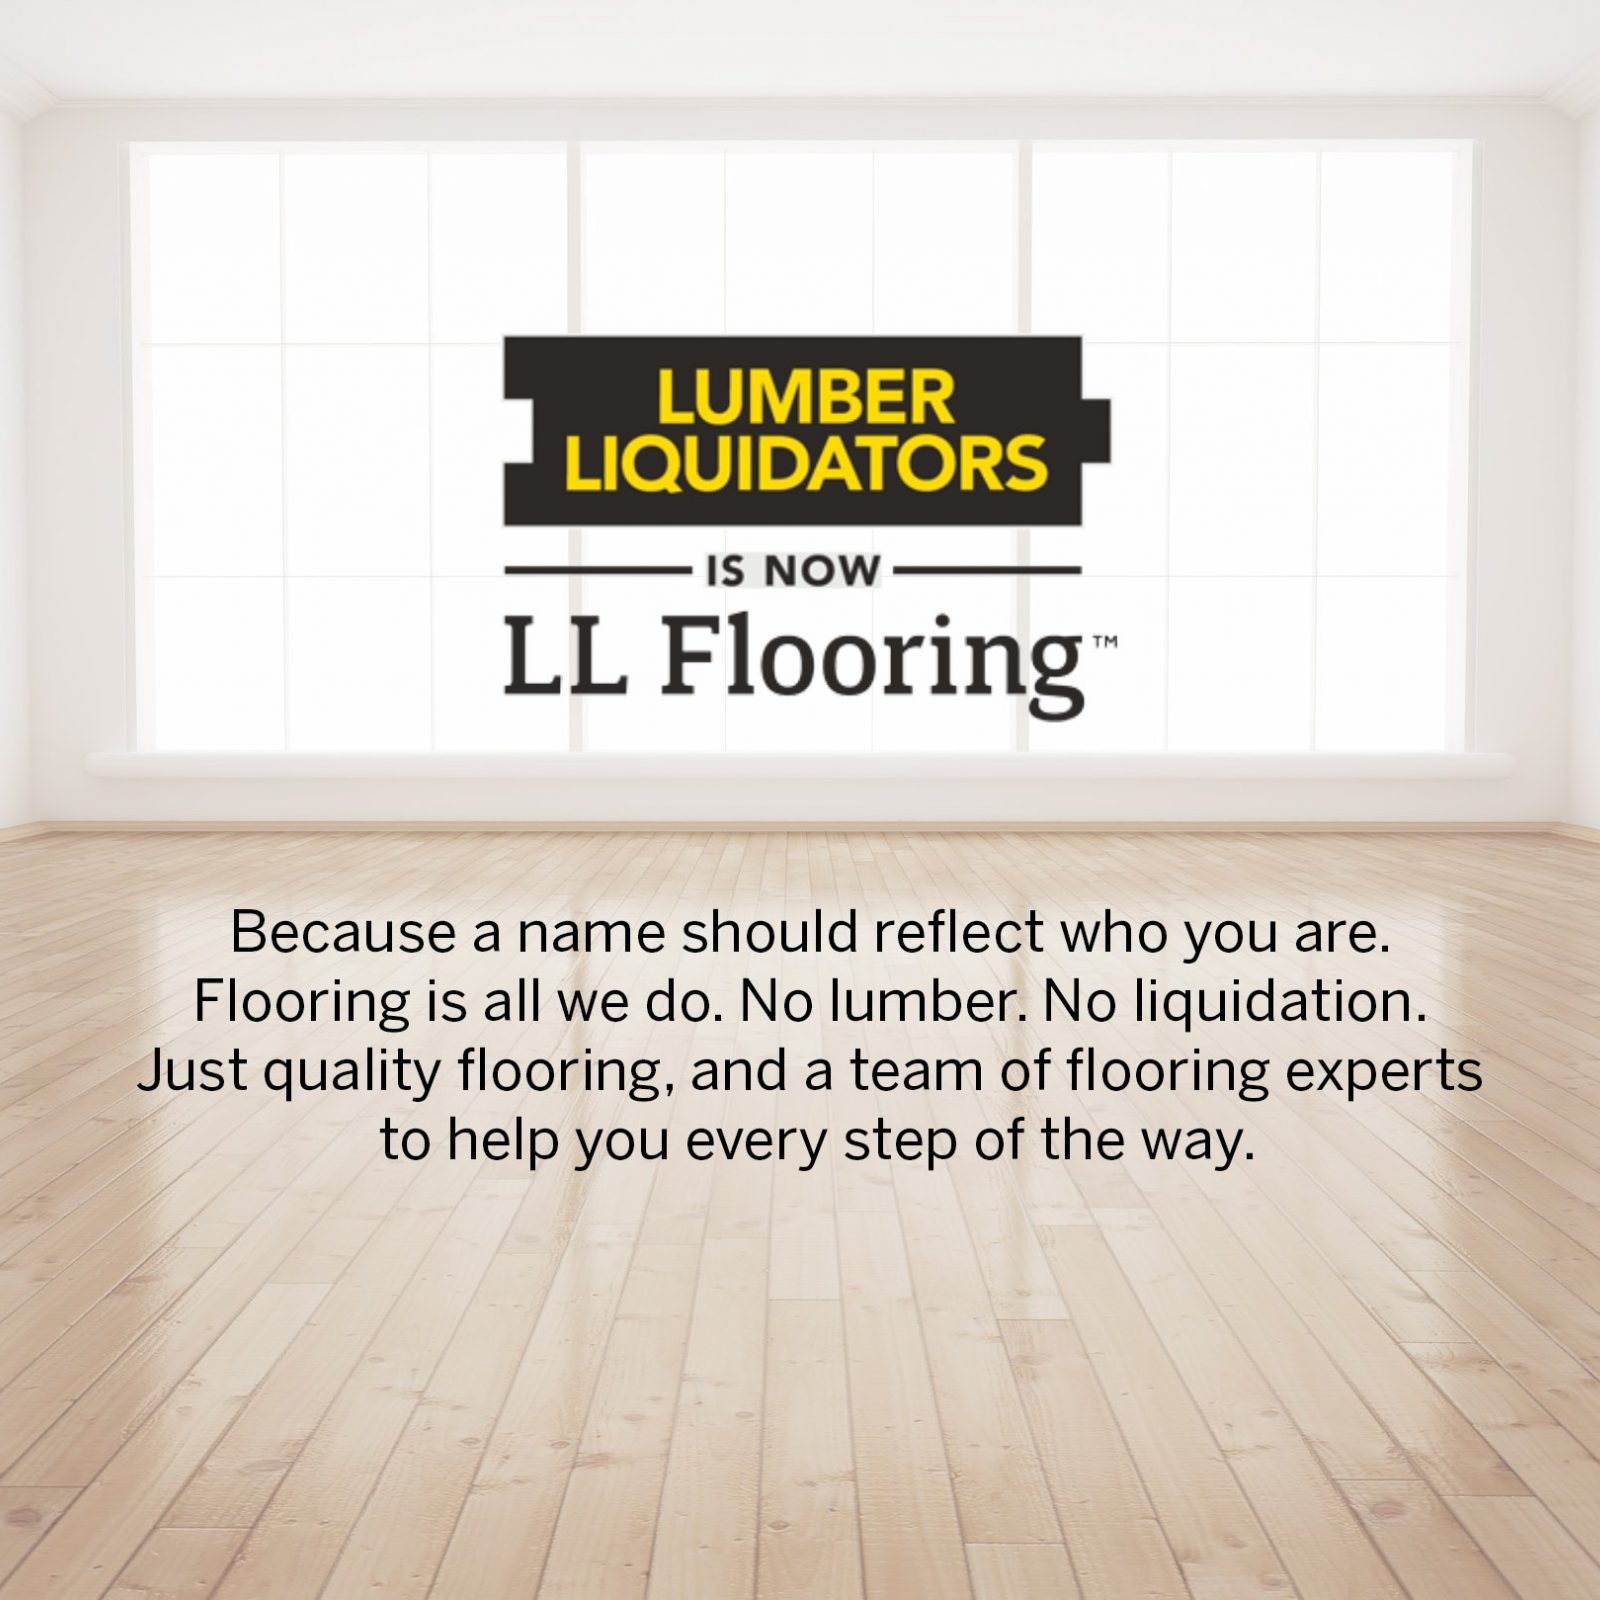 Lumber Liquidators Wantbranding